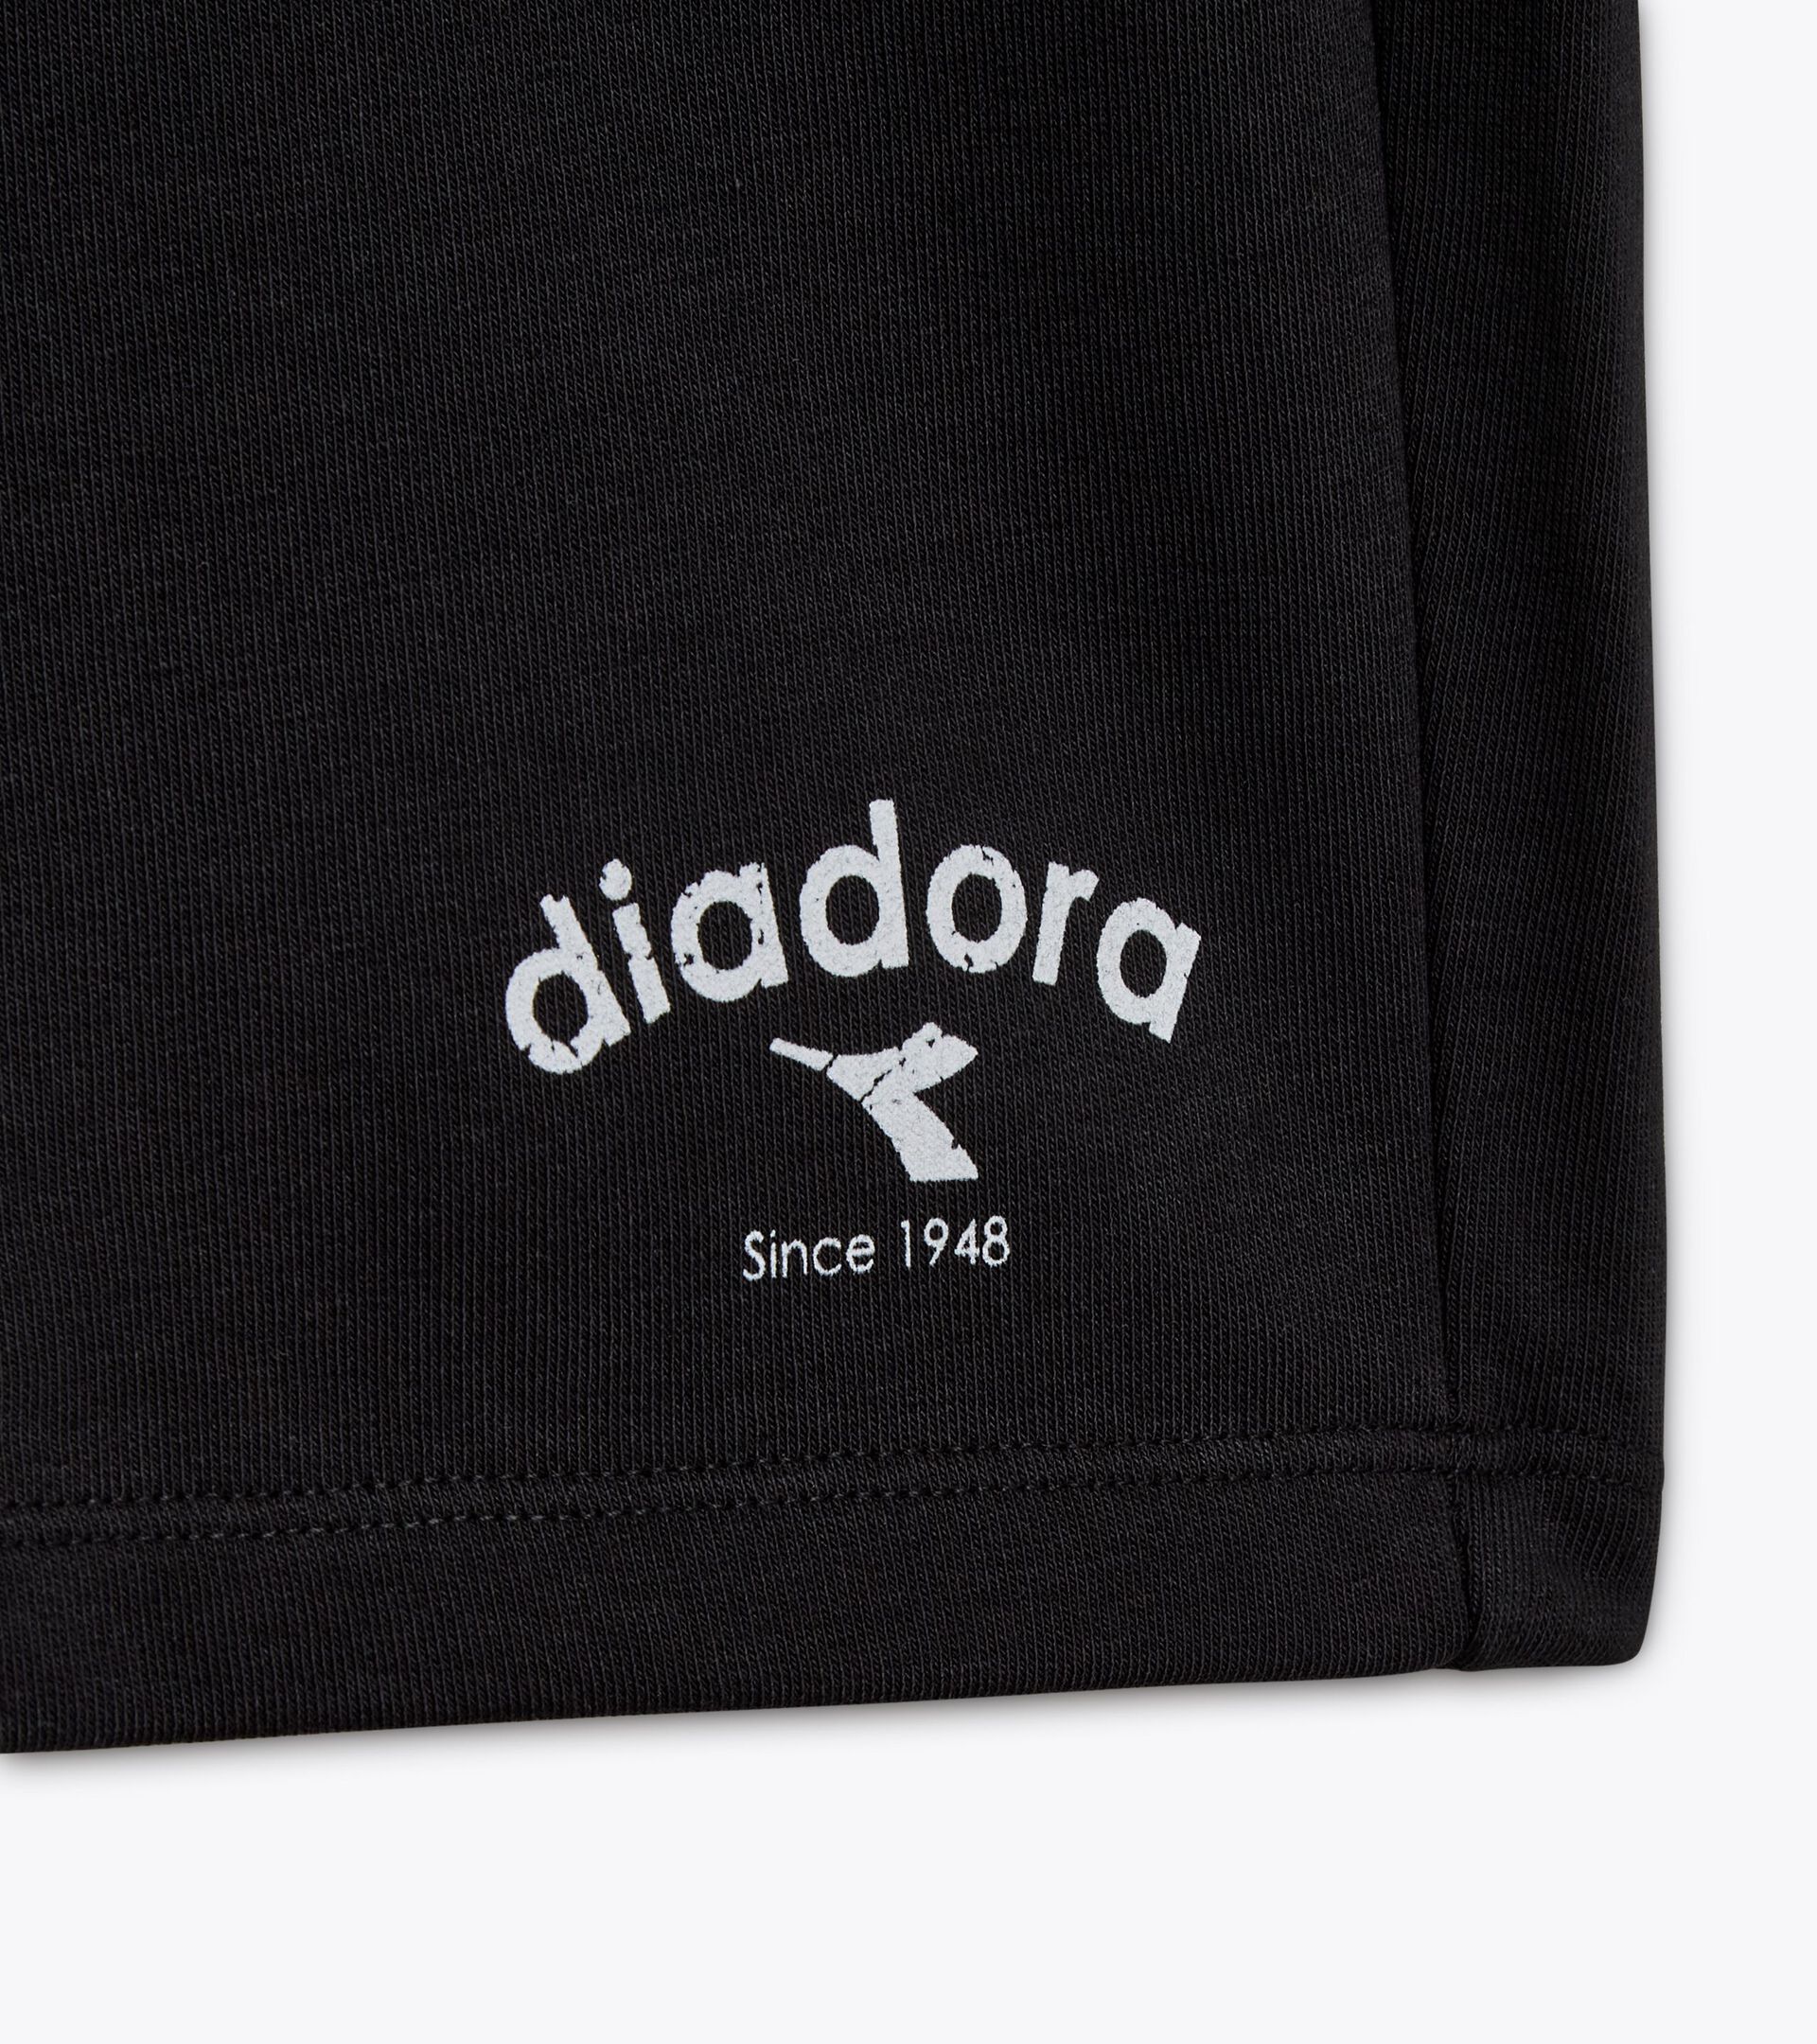 French terry cotton bermuda shorts - Gender Neutral BERMUDA ATHL. LOGO BLACK - Diadora